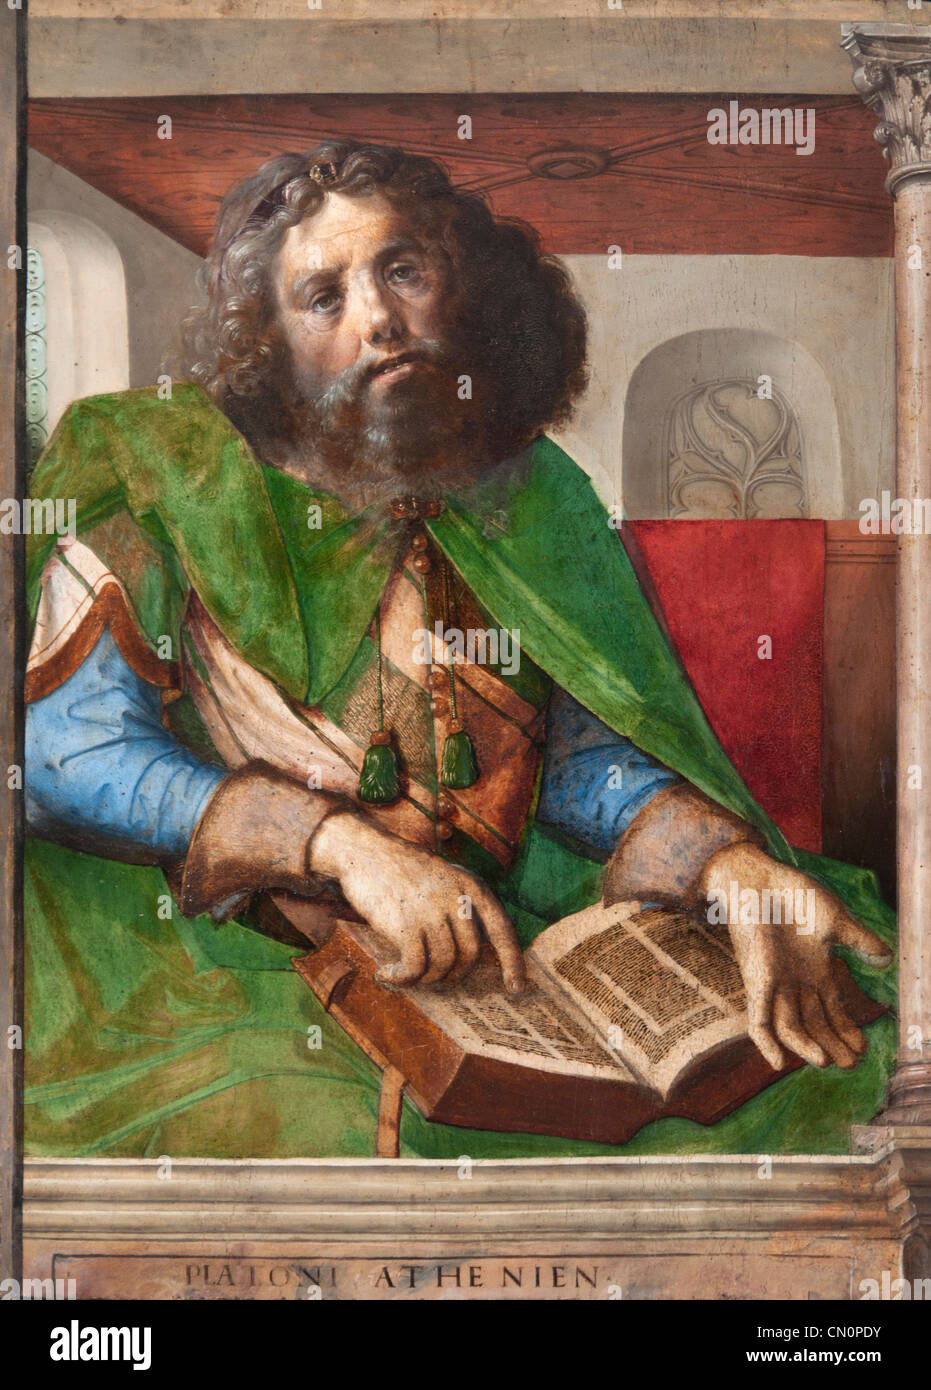 Plato Platon der griechische Philosoph Urbino Gemälde 1474 Justus van Gent und Pedro Berruguete Stockfoto